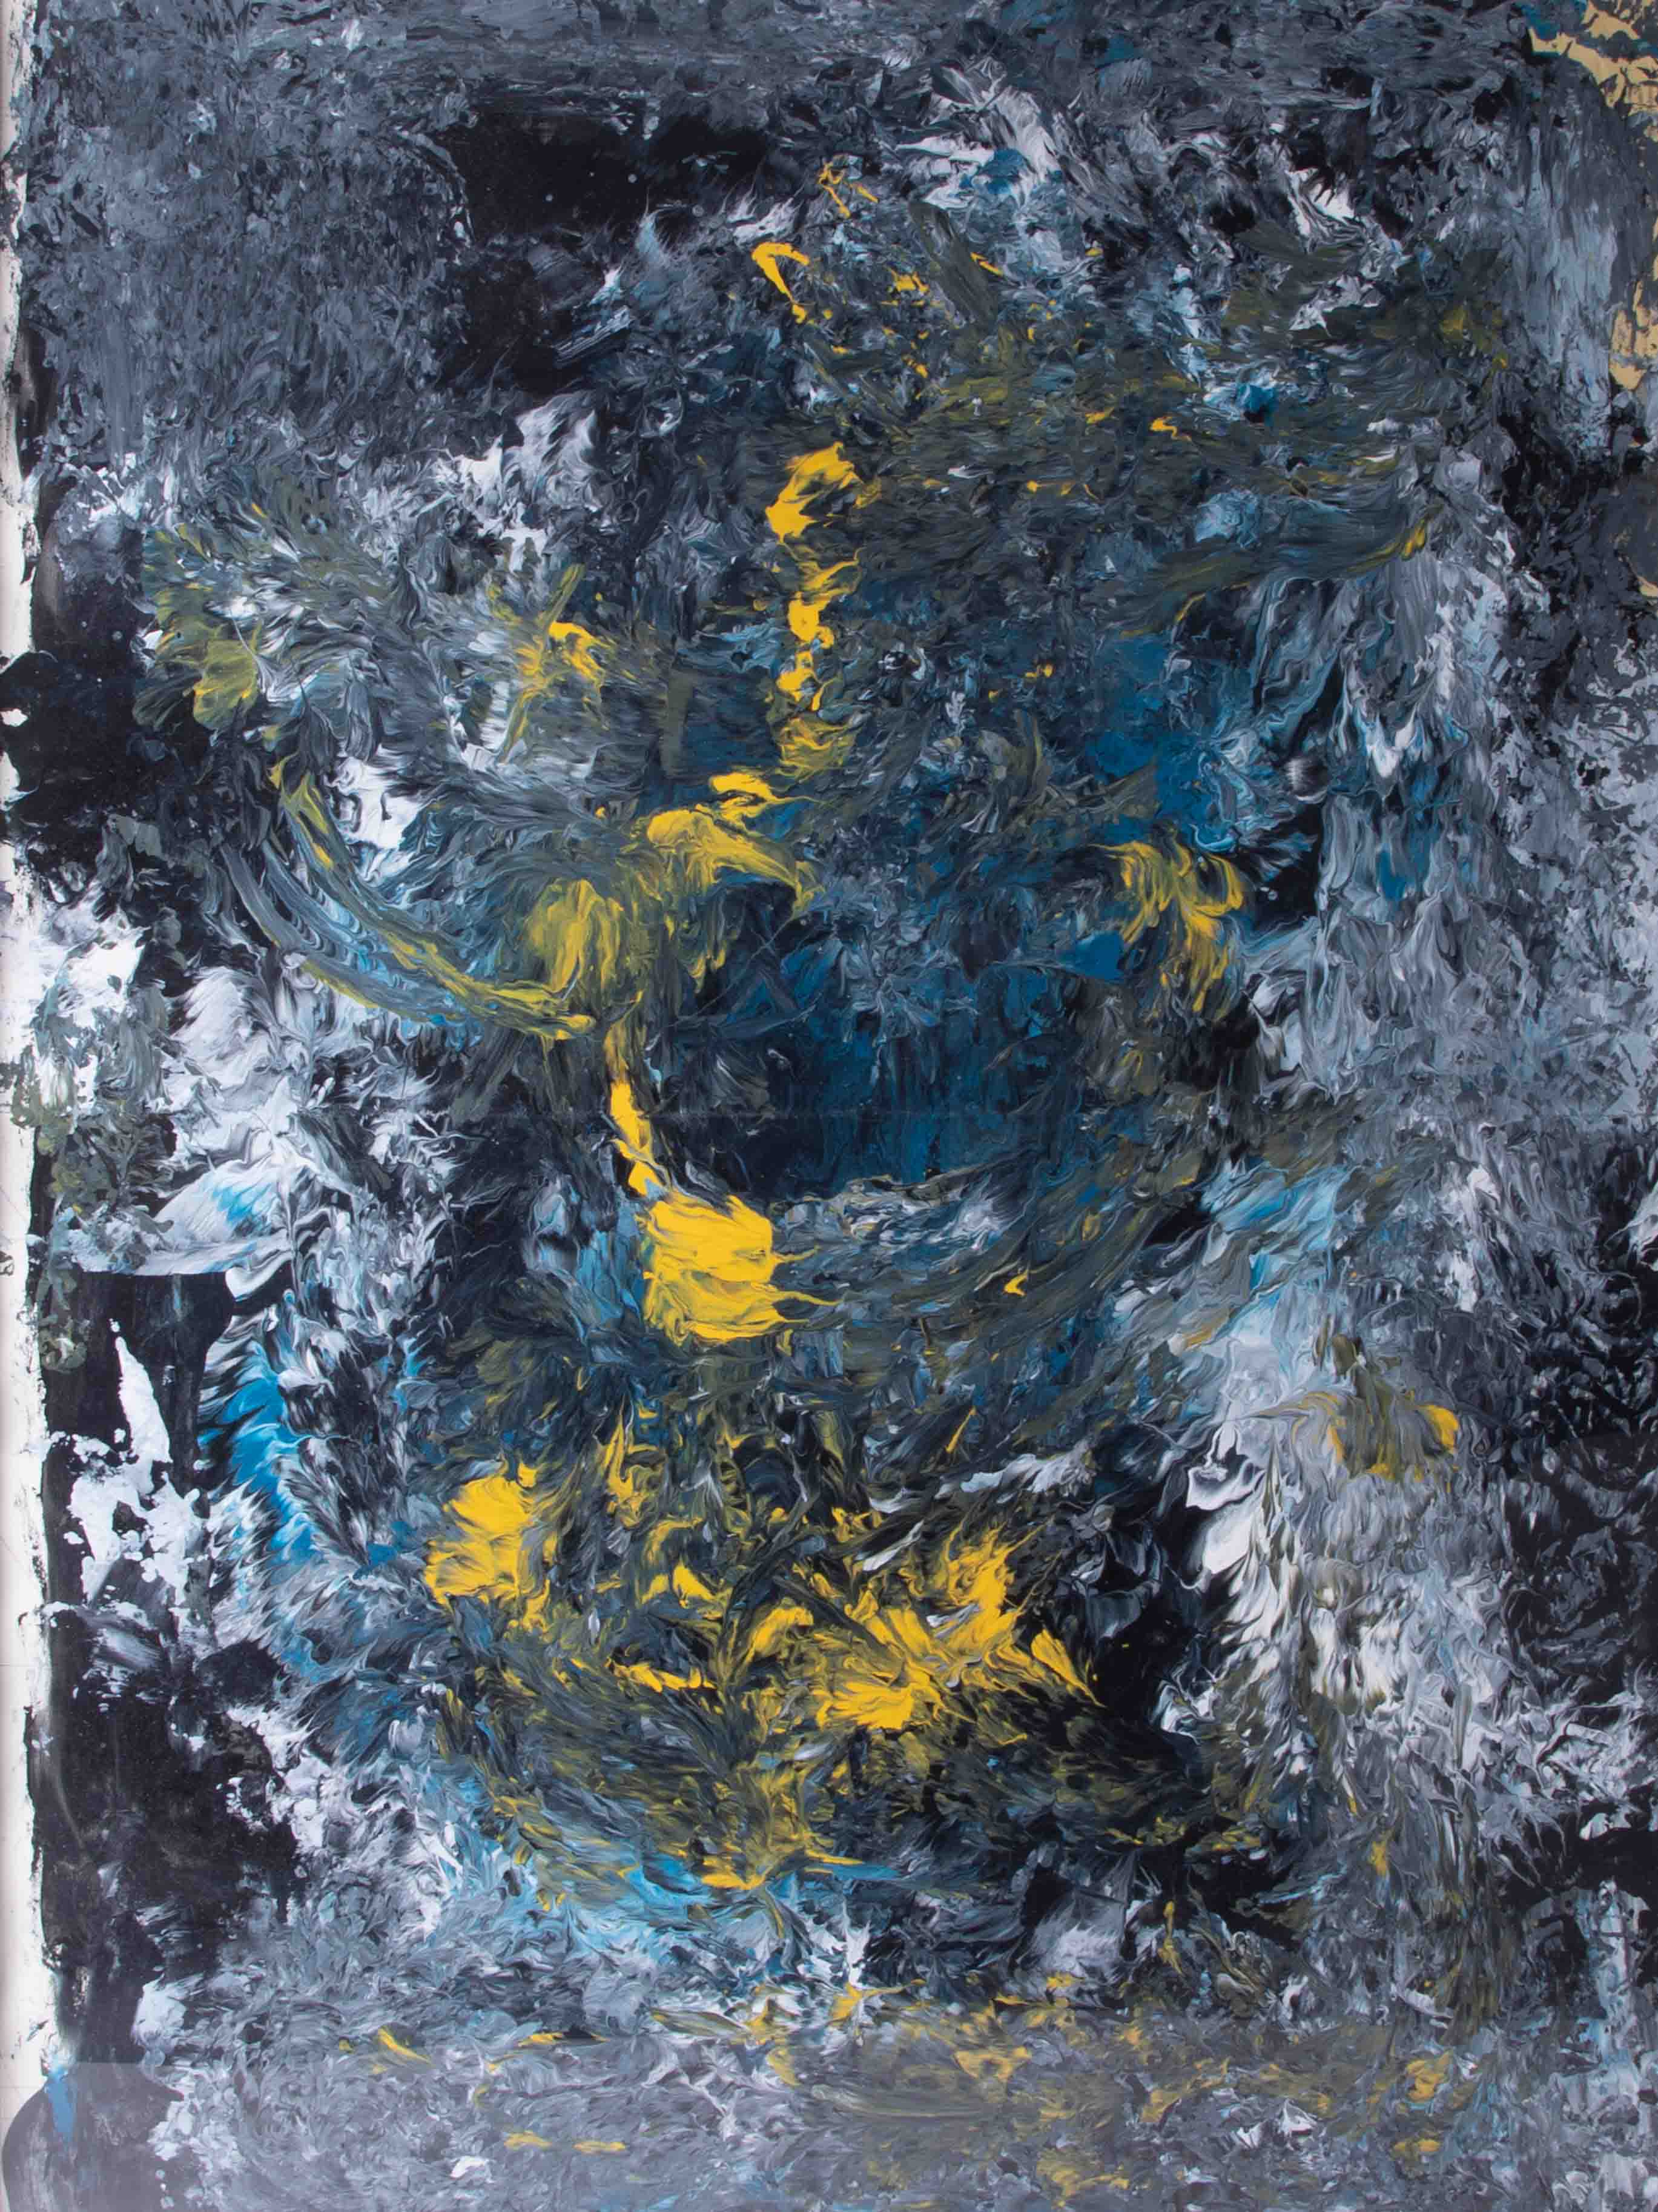 Robert Hone, 'Terra Del Fuego', mixed media on paper, 2010, 85cm x 65cm. - Image 2 of 2